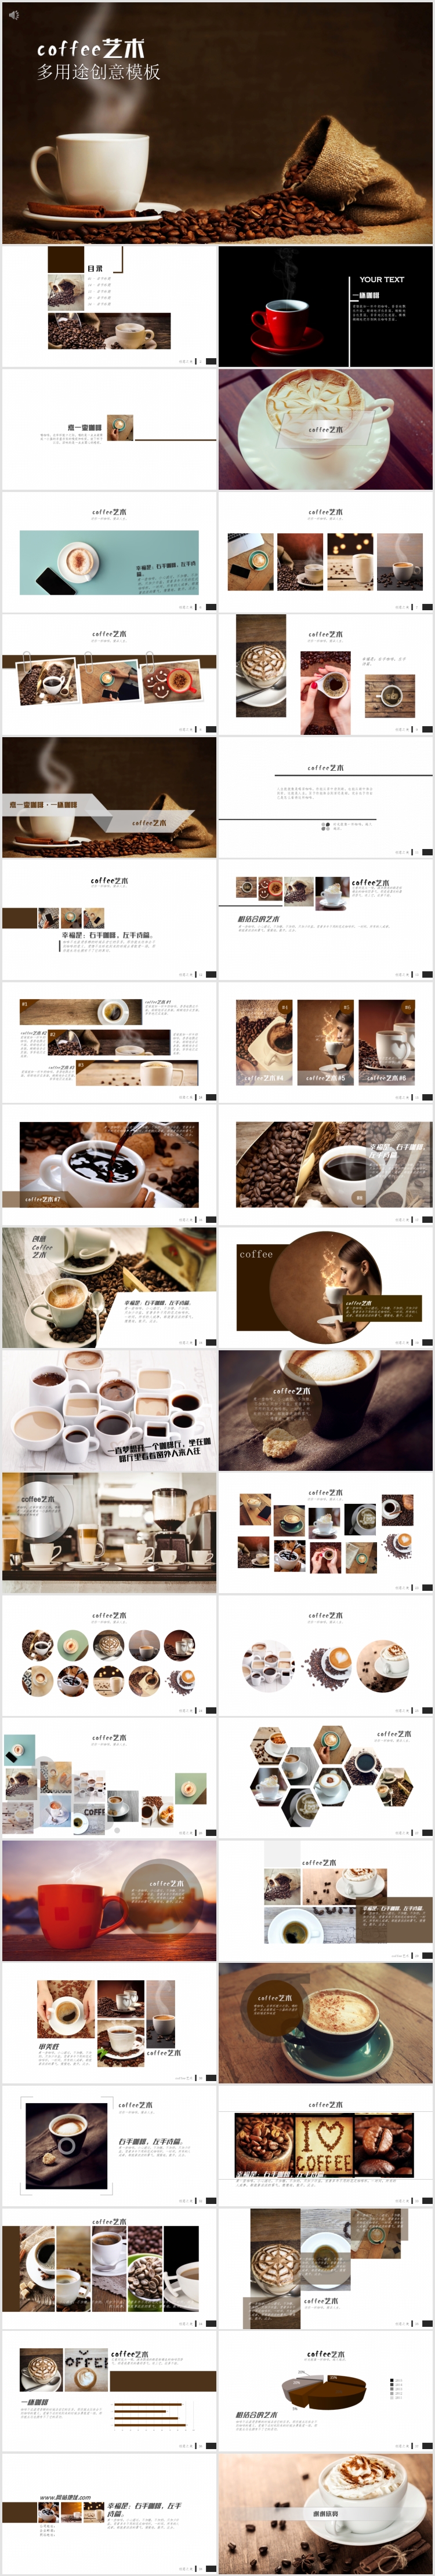 高端咖啡饮品图片轮播介绍PPT模板